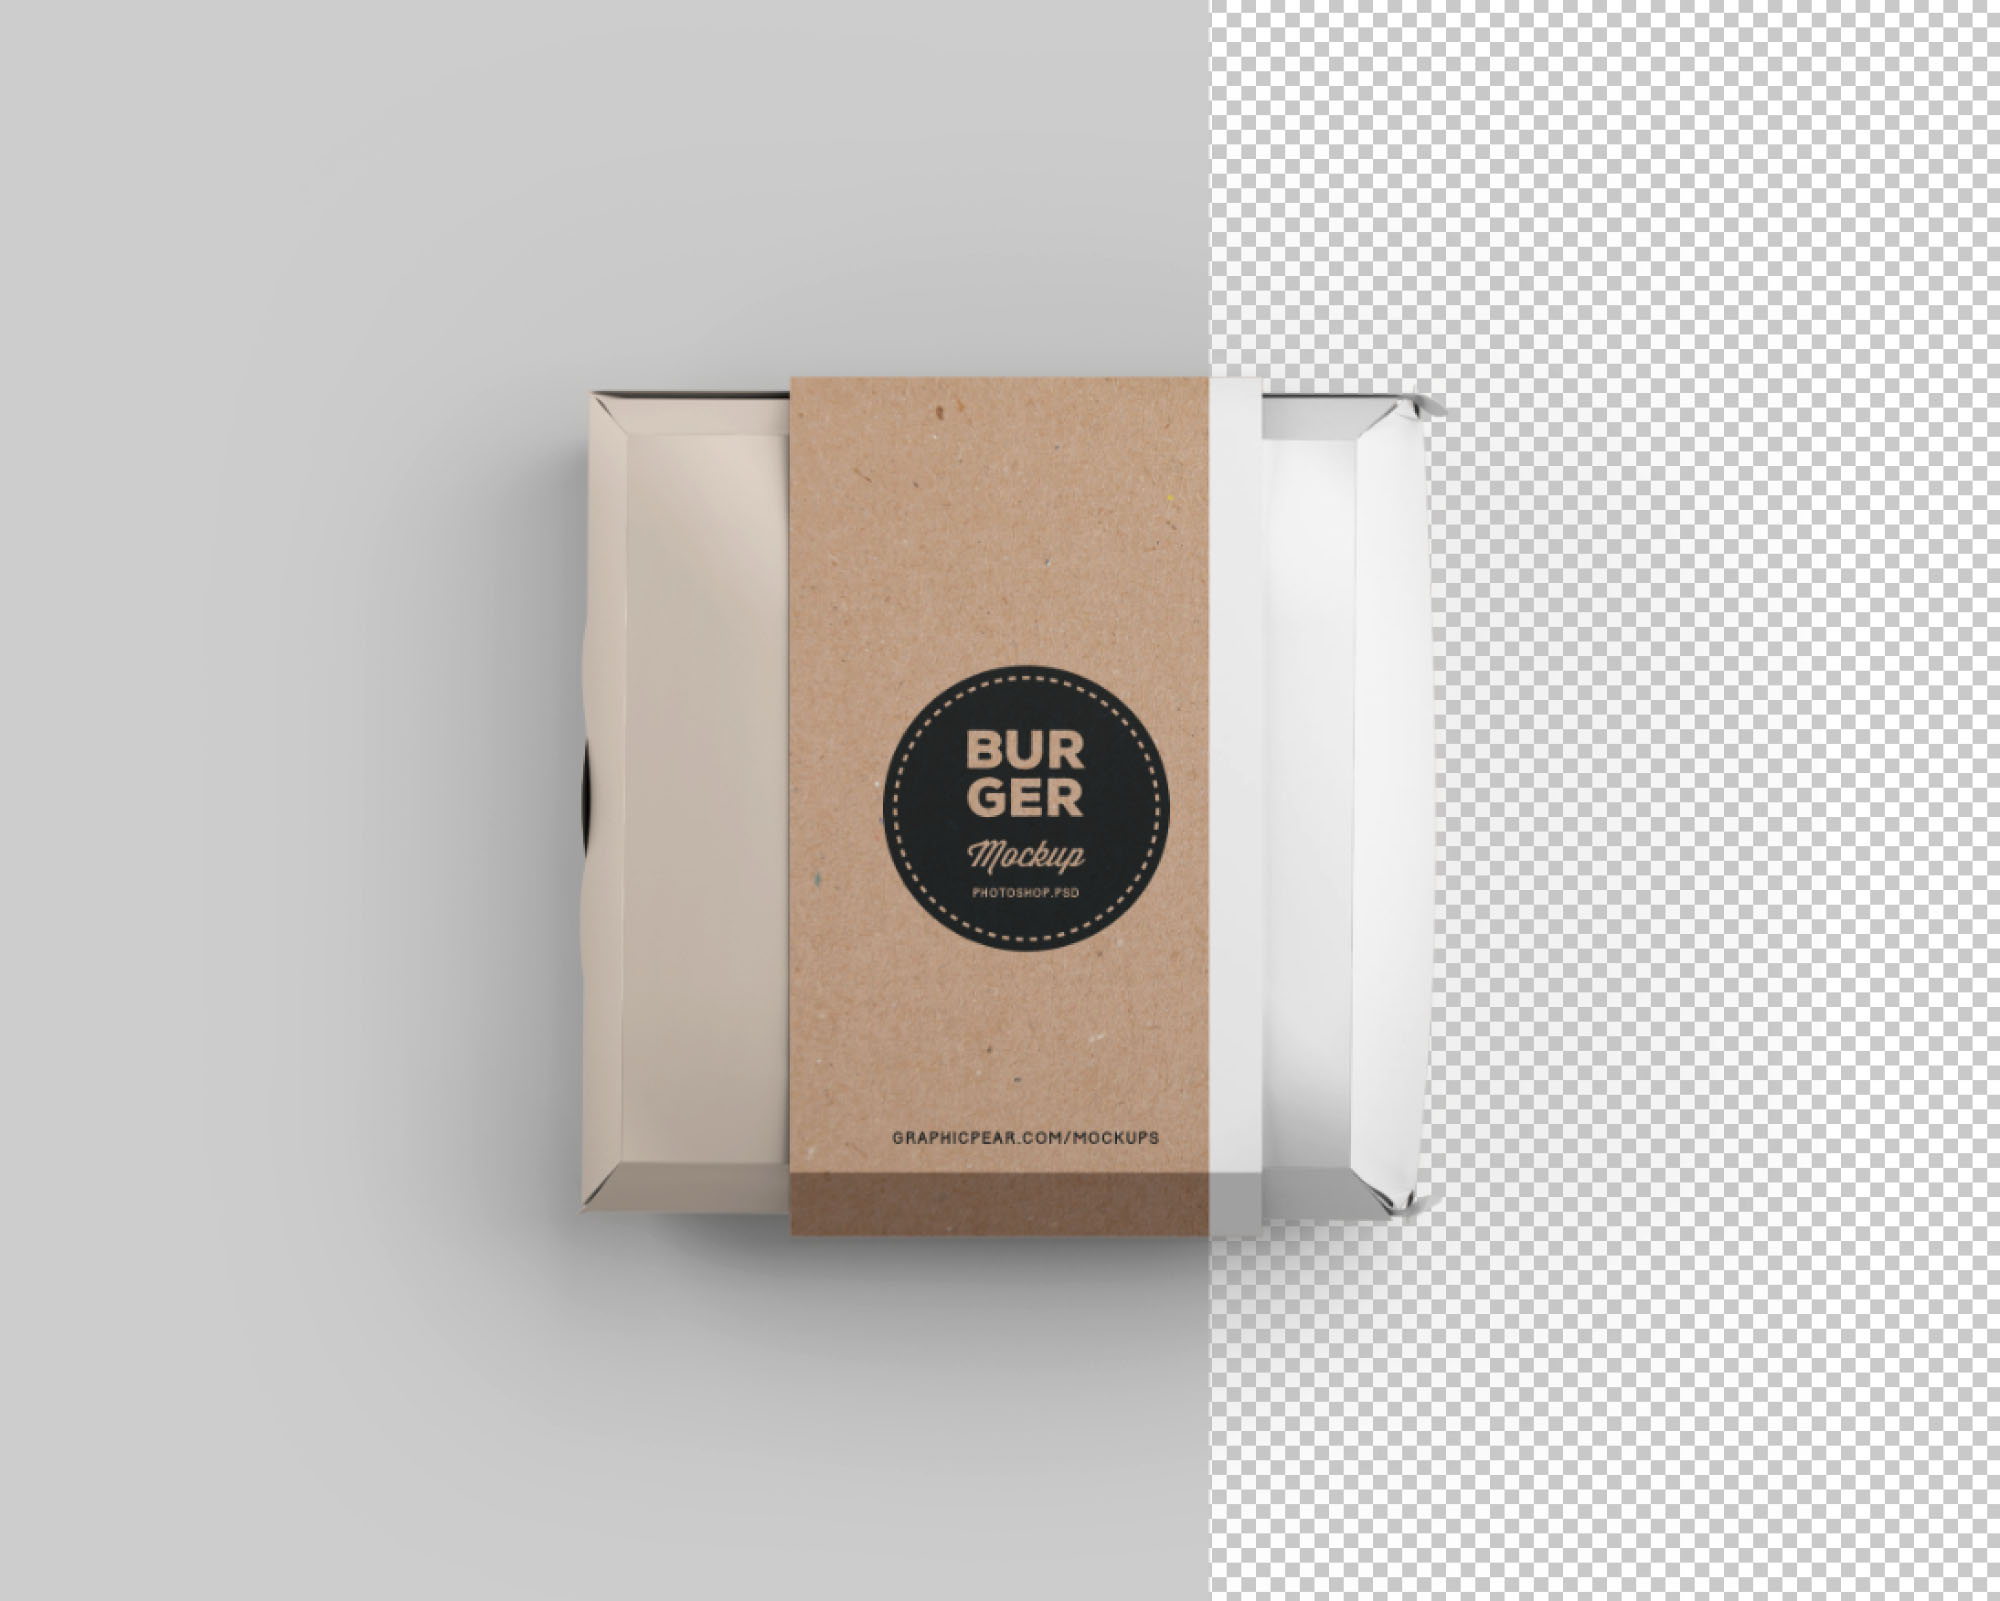 汉堡包装盒设计效果图样机模板 Burger Box Package Mockup插图(1)